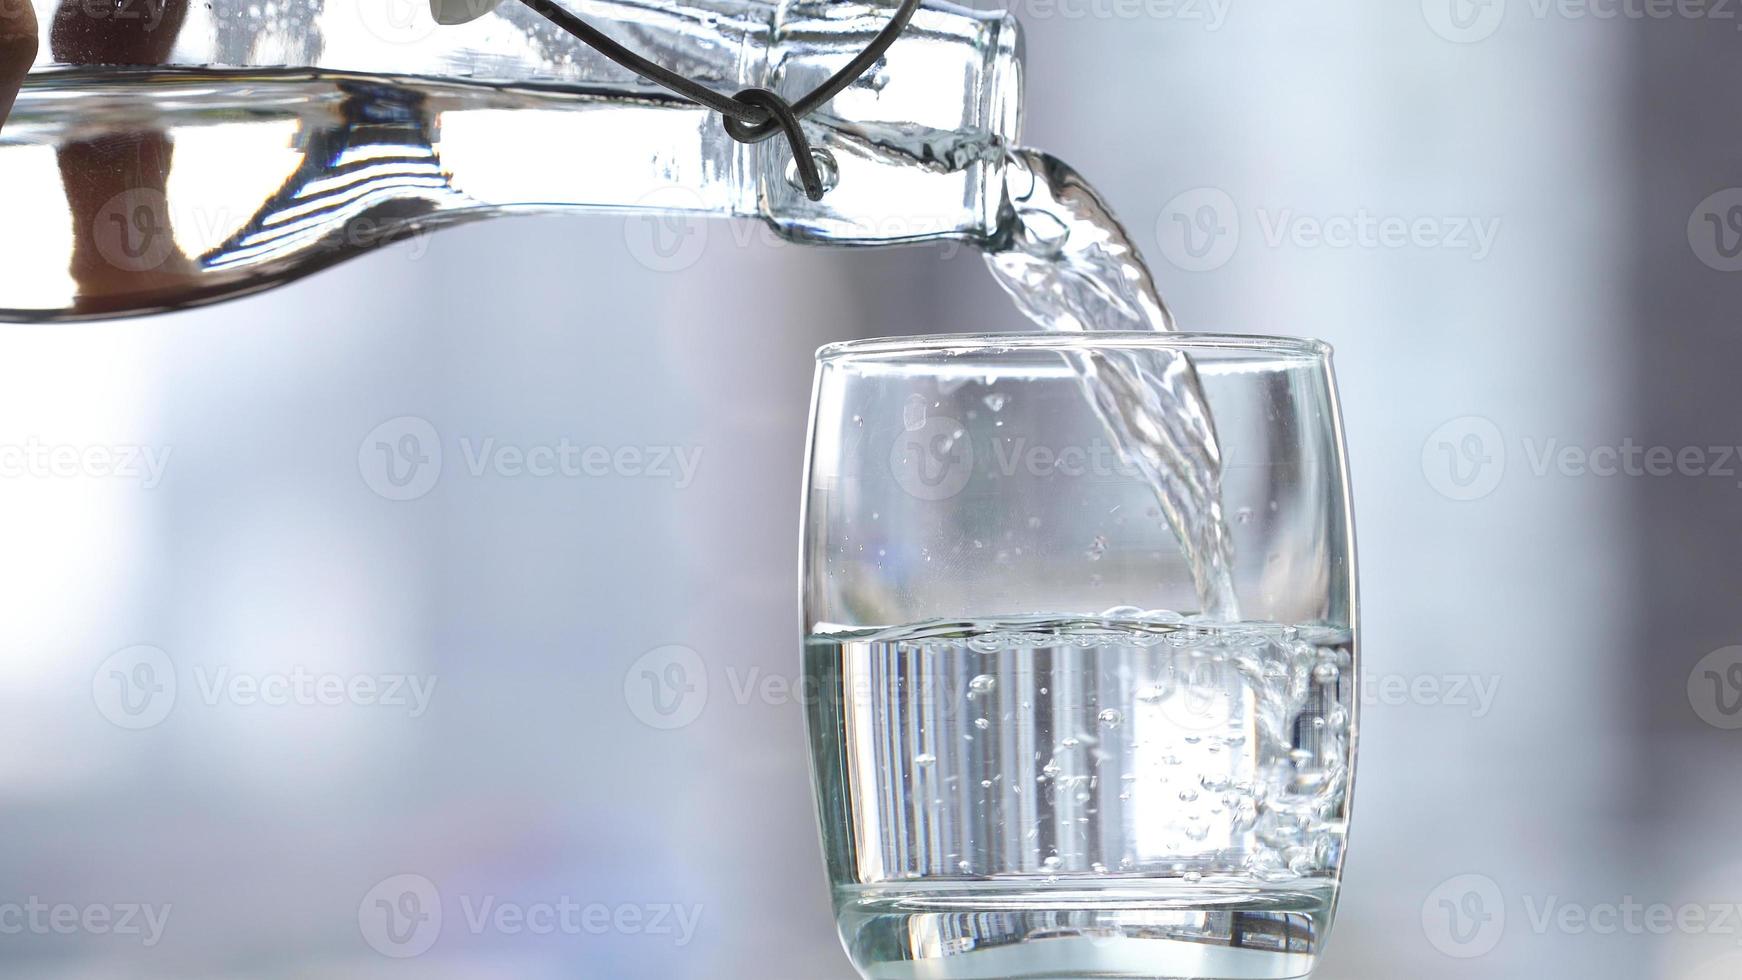 drick vatten som häller i glas på bordet foto